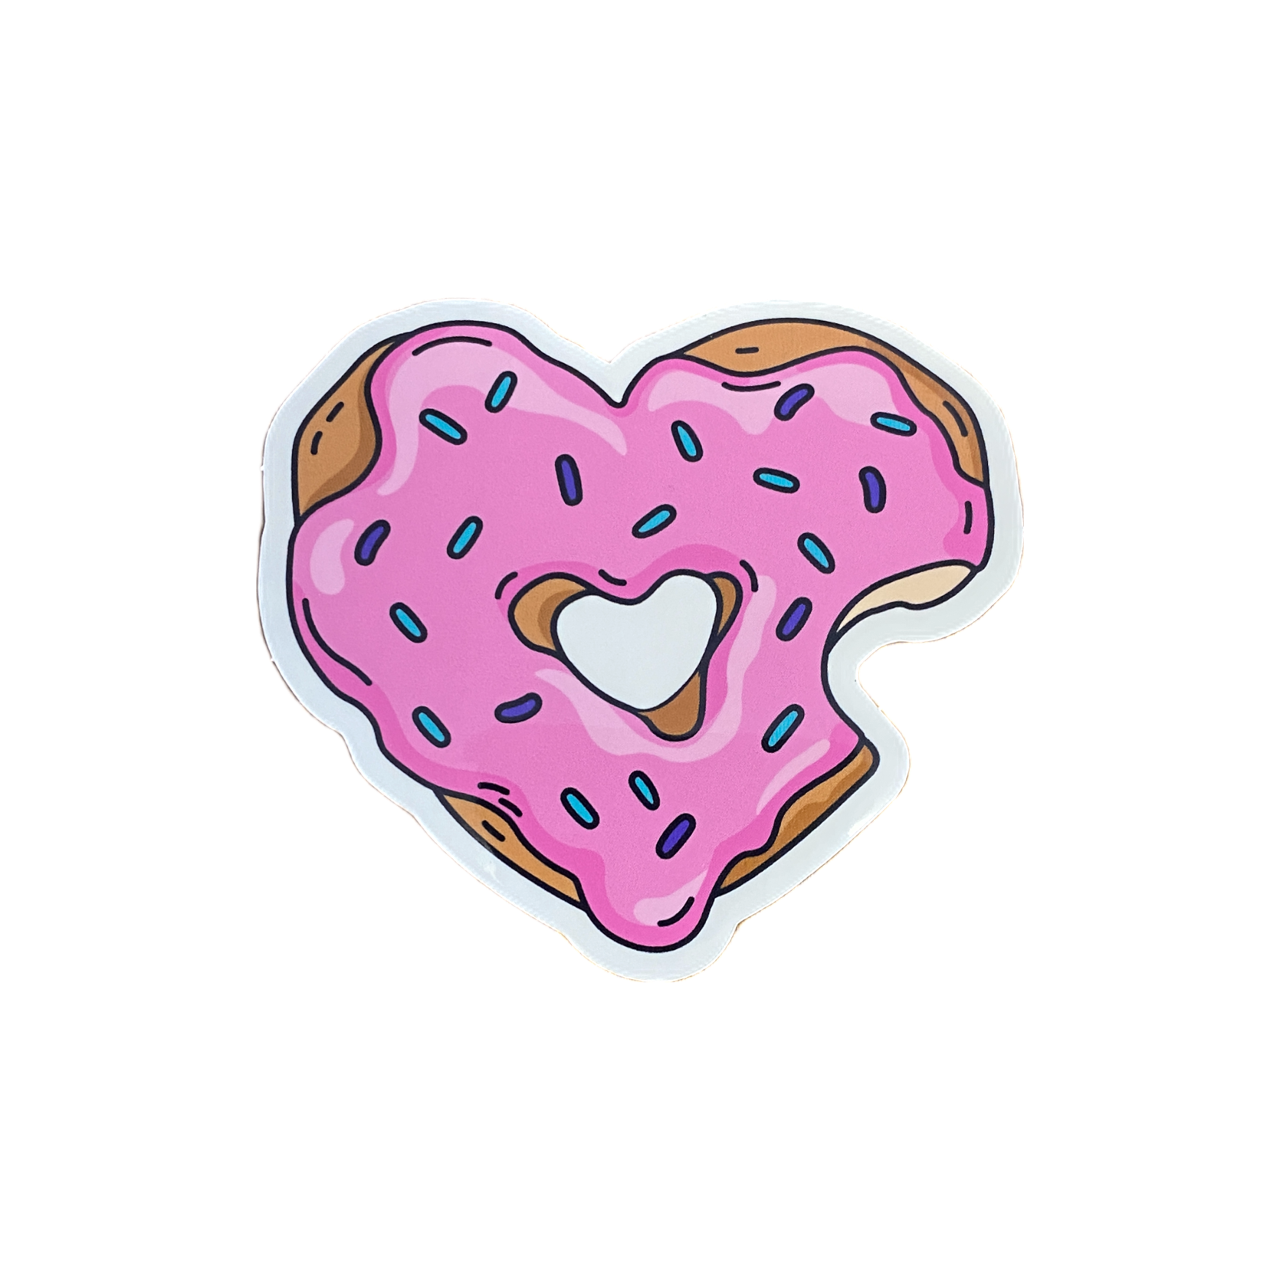 Die Cut heart shaped Donut Sticker